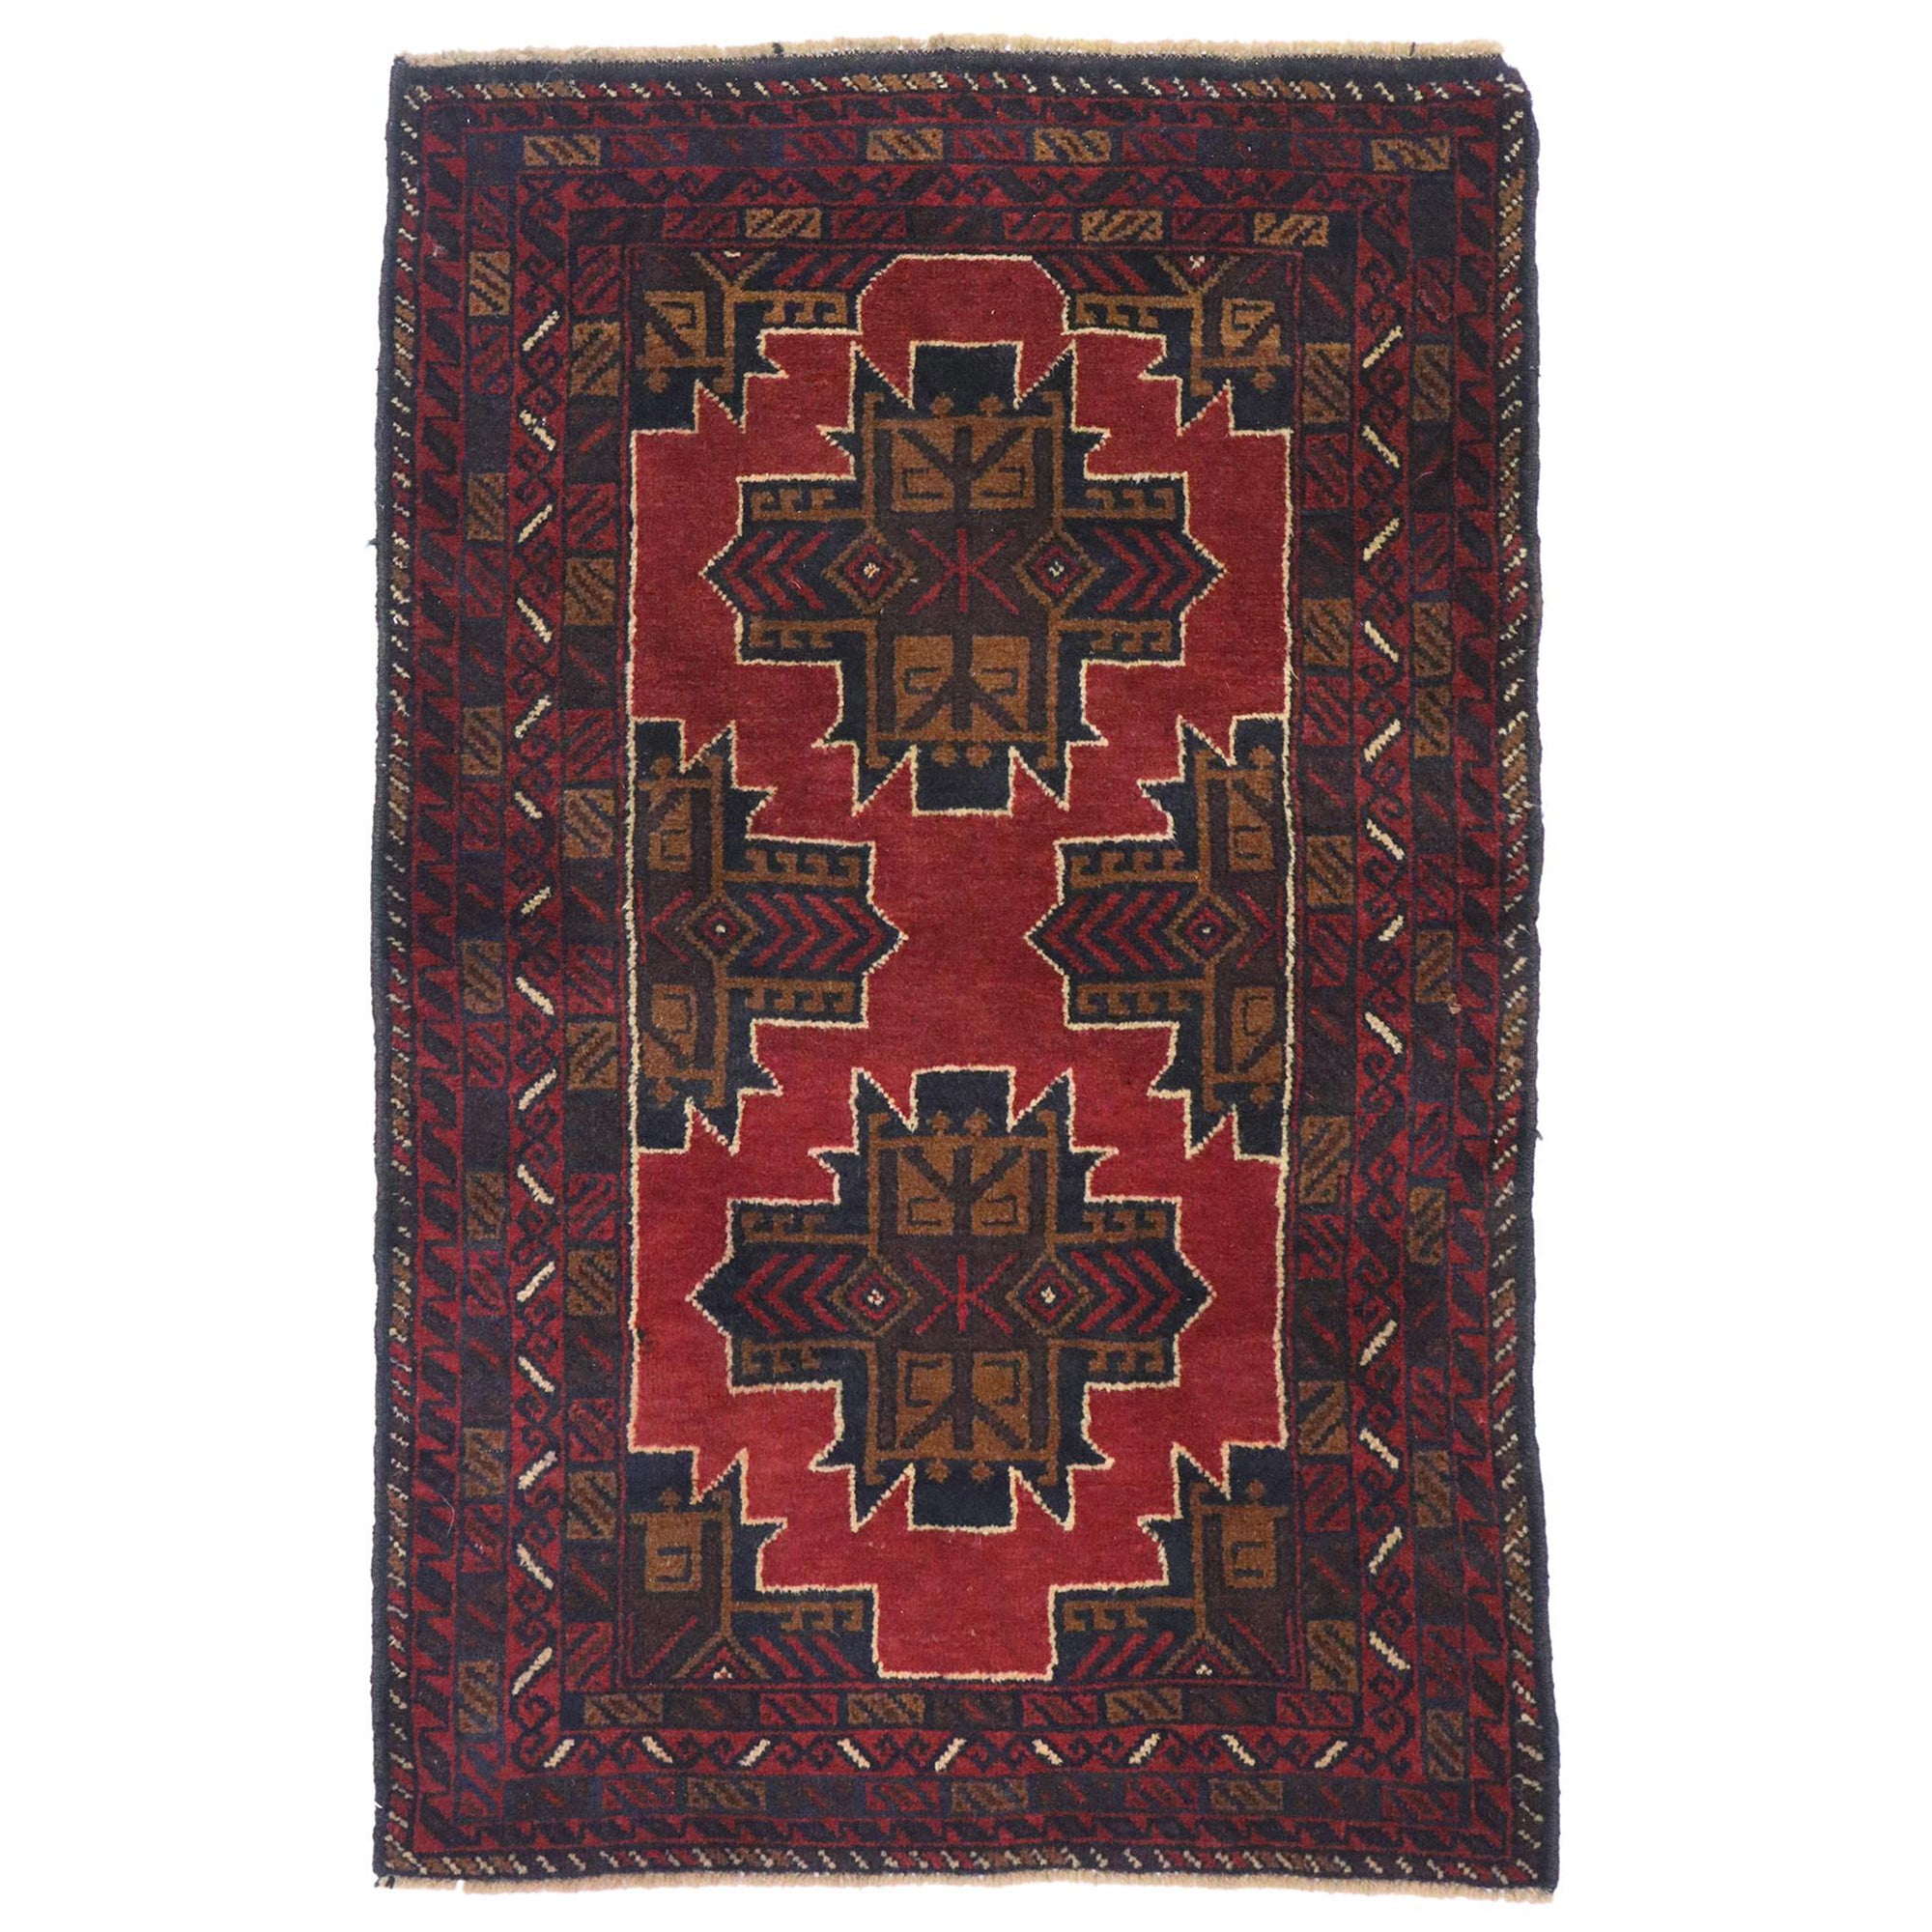 Persischer Vintage-Baluch-Teppich mit modernem Mid-Century-Stil